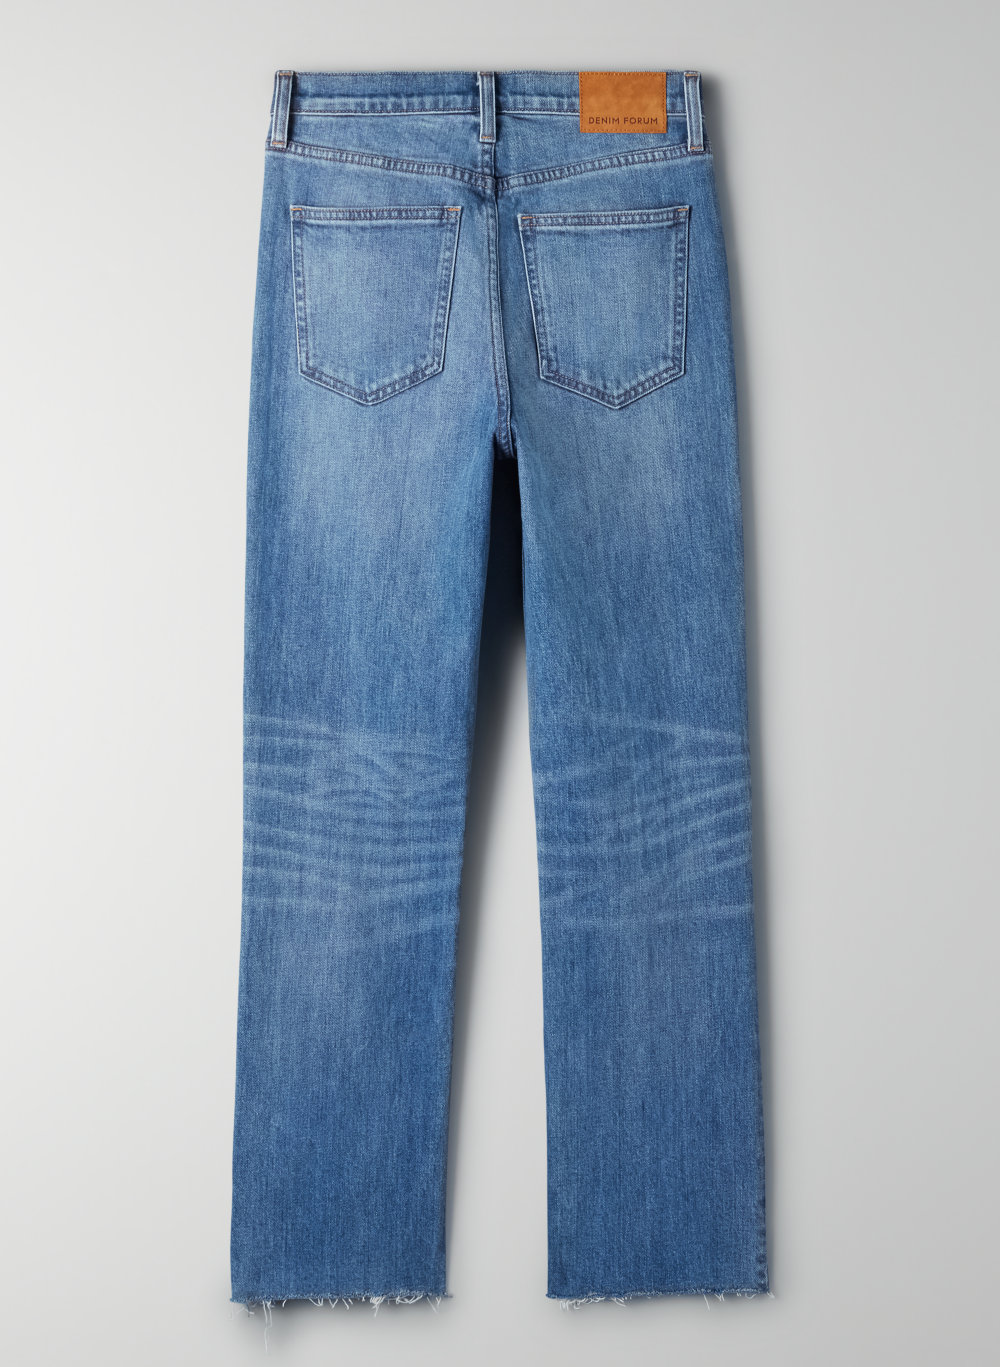 28l jeans